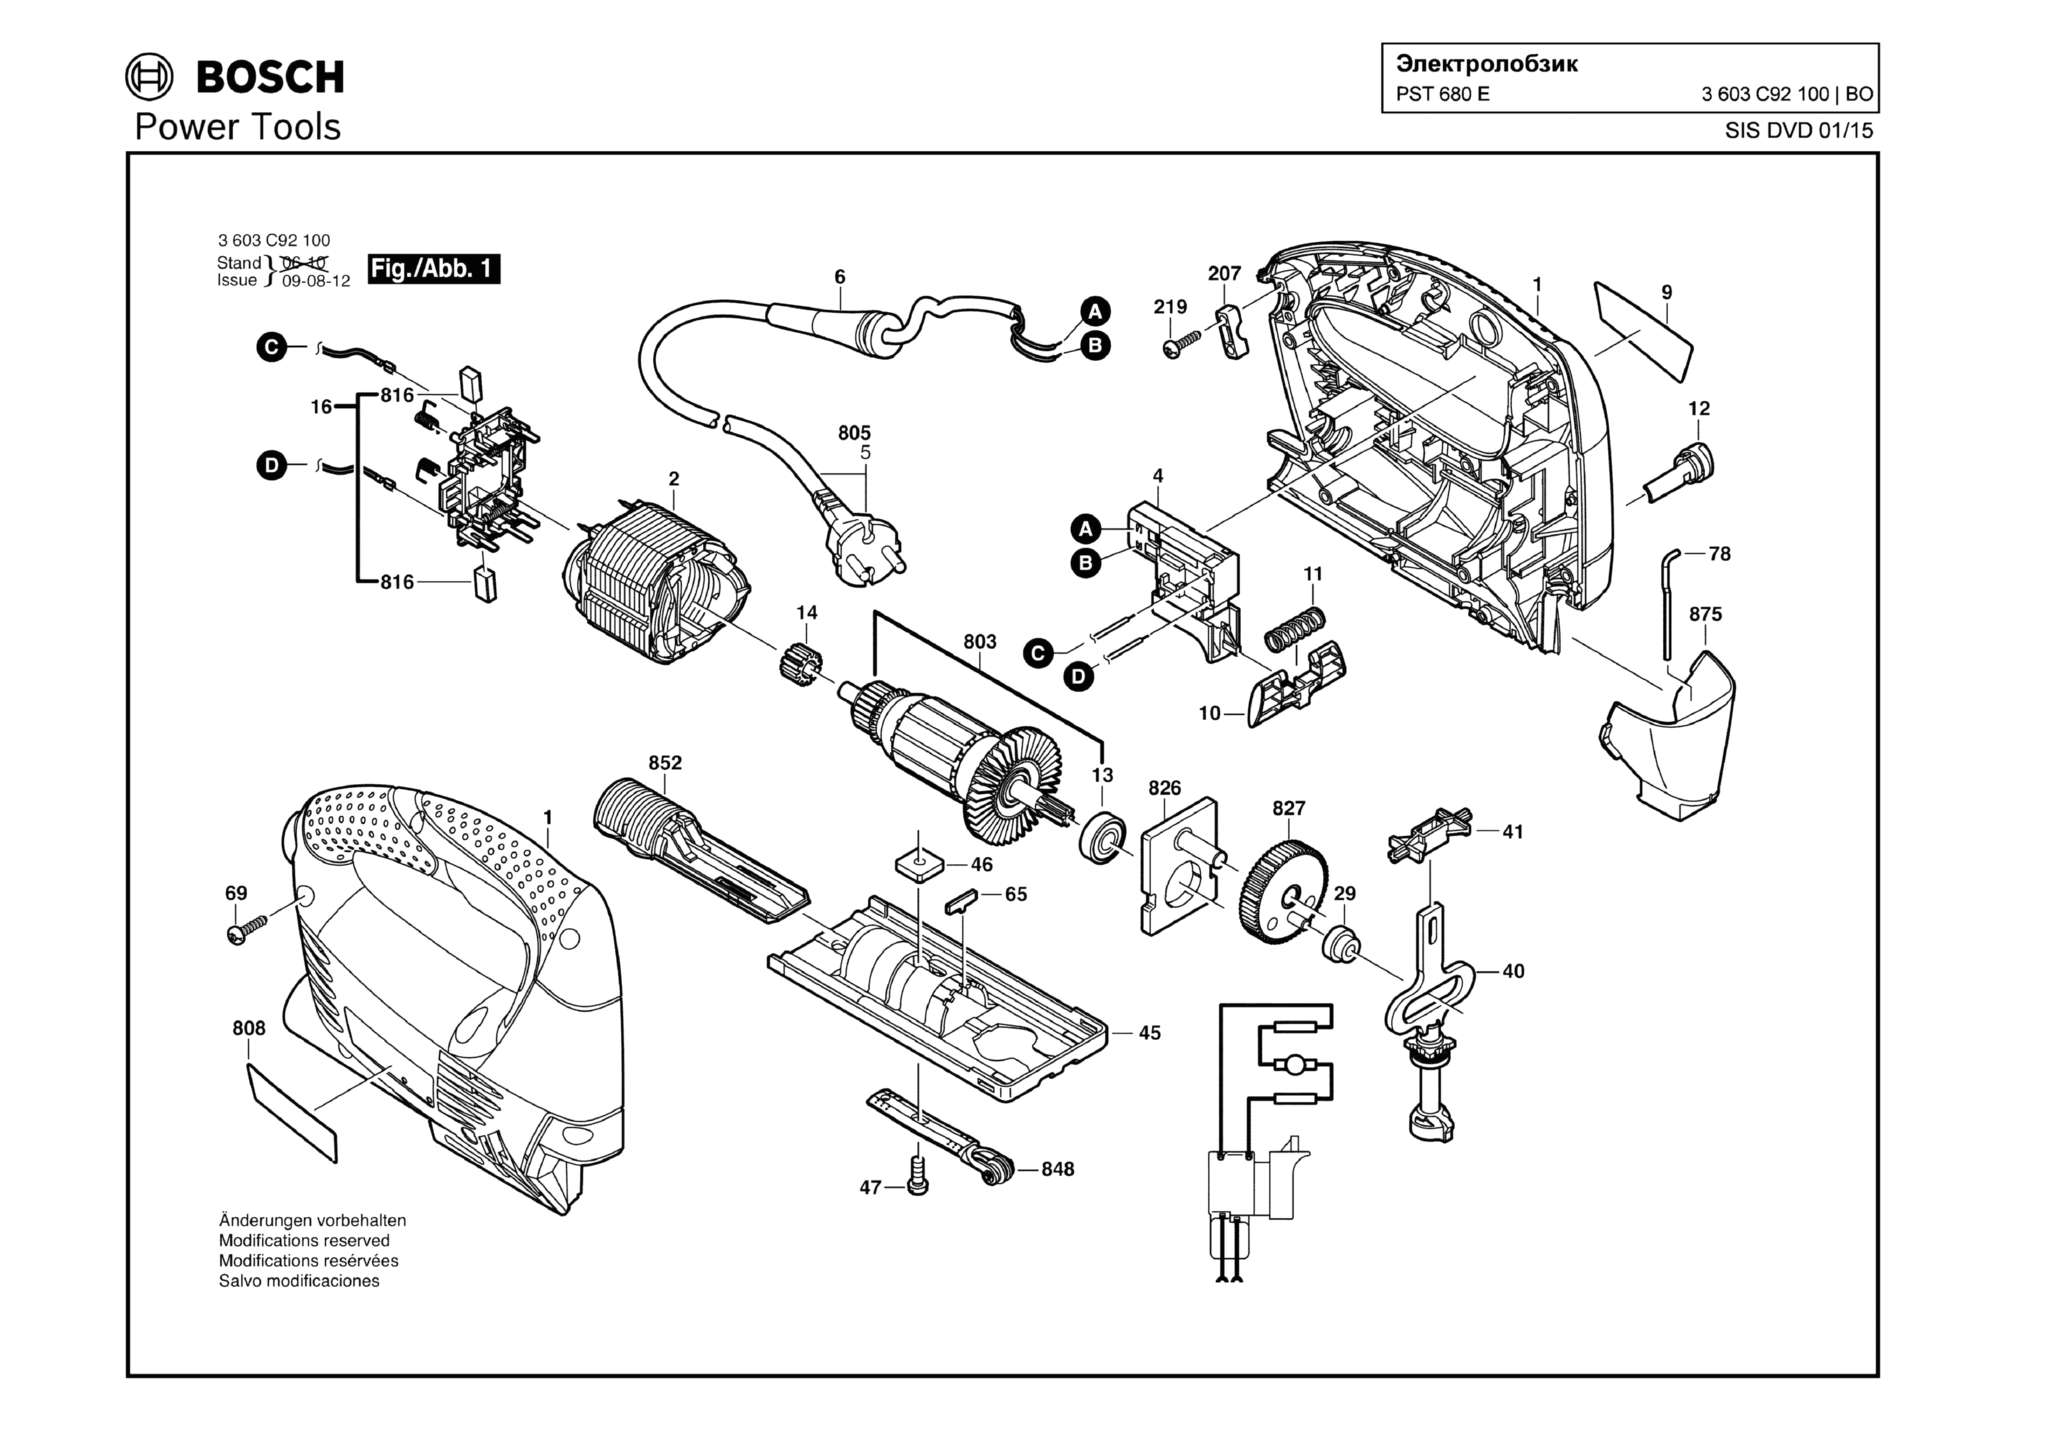 Запчасти, схема и деталировка Bosch PST 680 E (ТИП 3603C92100)